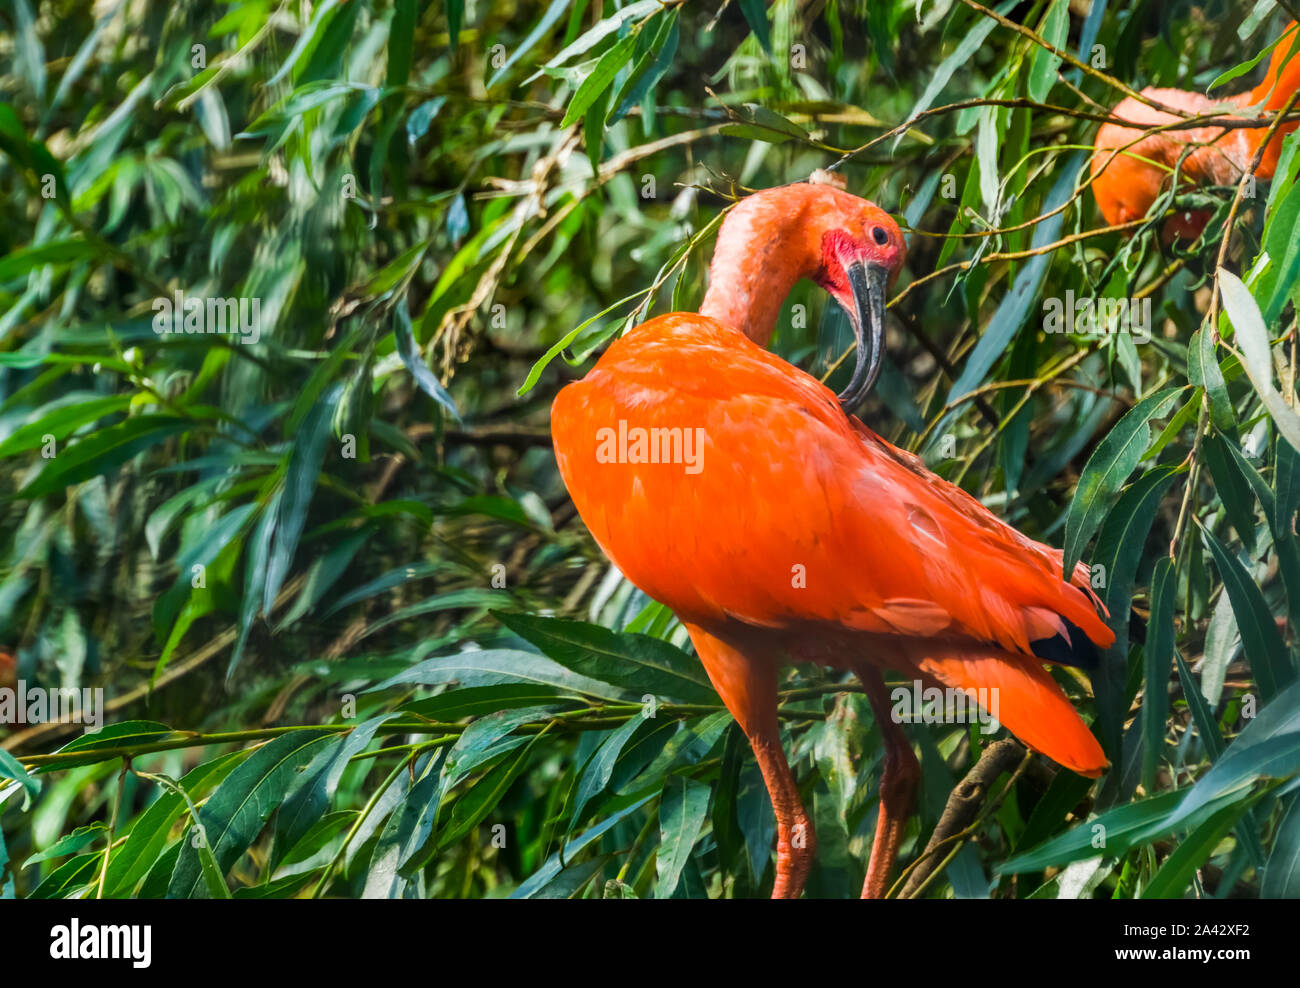 Primo piano di un ibis rosso scarlatto in un albero preening le sue piume, tipico comportamento degli uccelli, colorato ed esotiche specie di uccelli da America Foto Stock